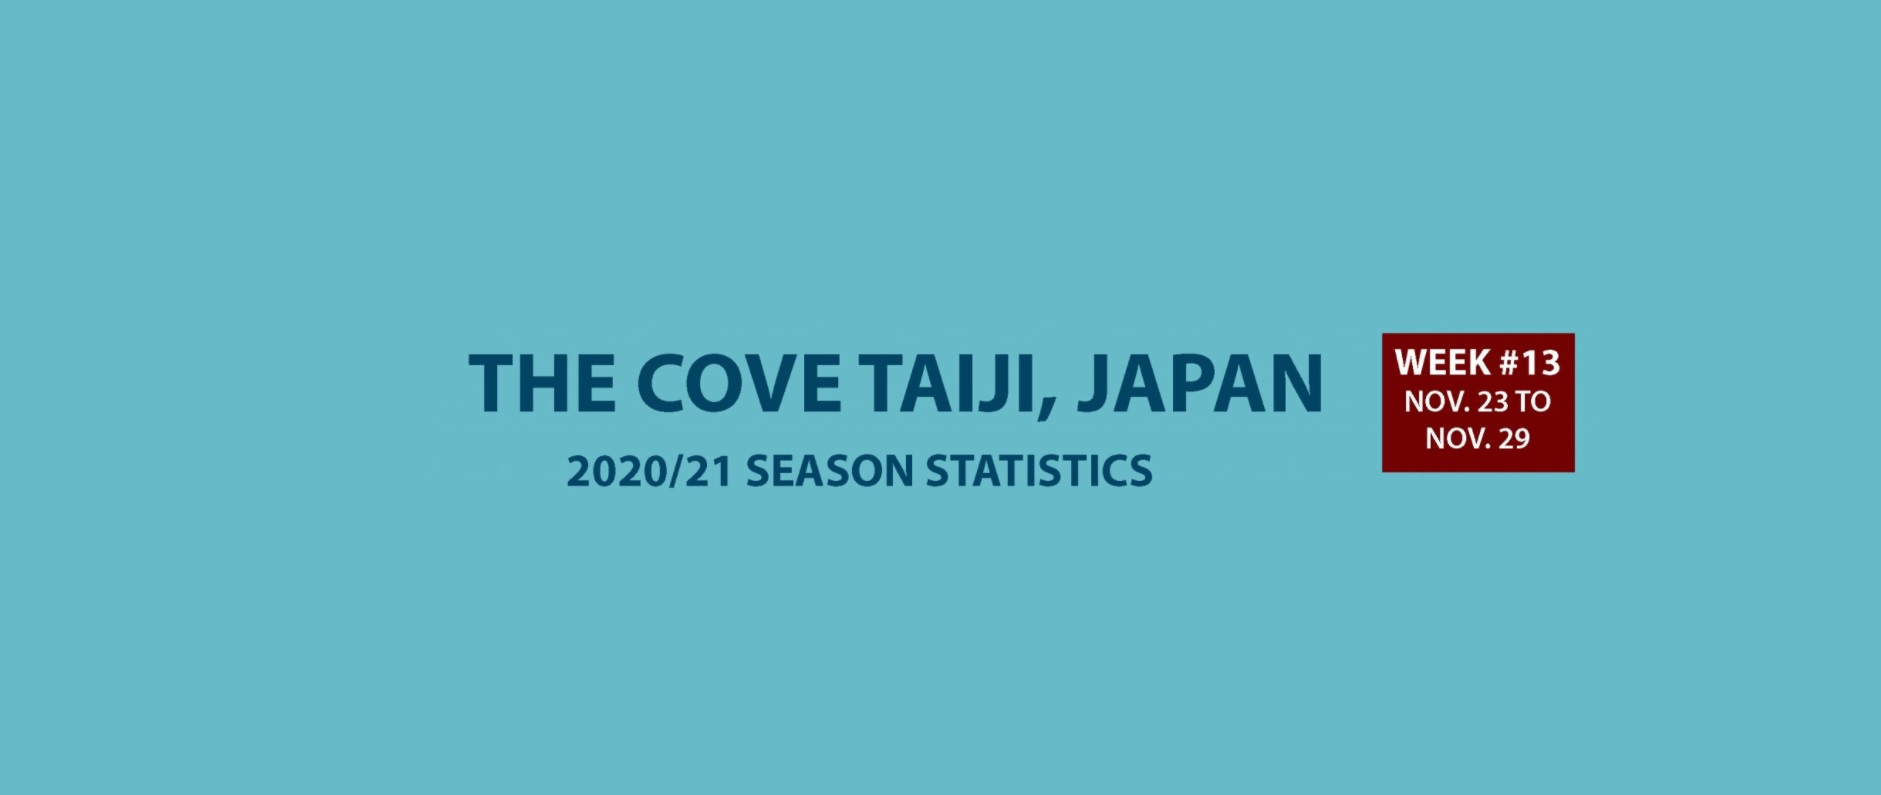 Chasse au dauphin à Taïji (Japon) – Bilan semaine du 23 au 29 novembre 2020 #13